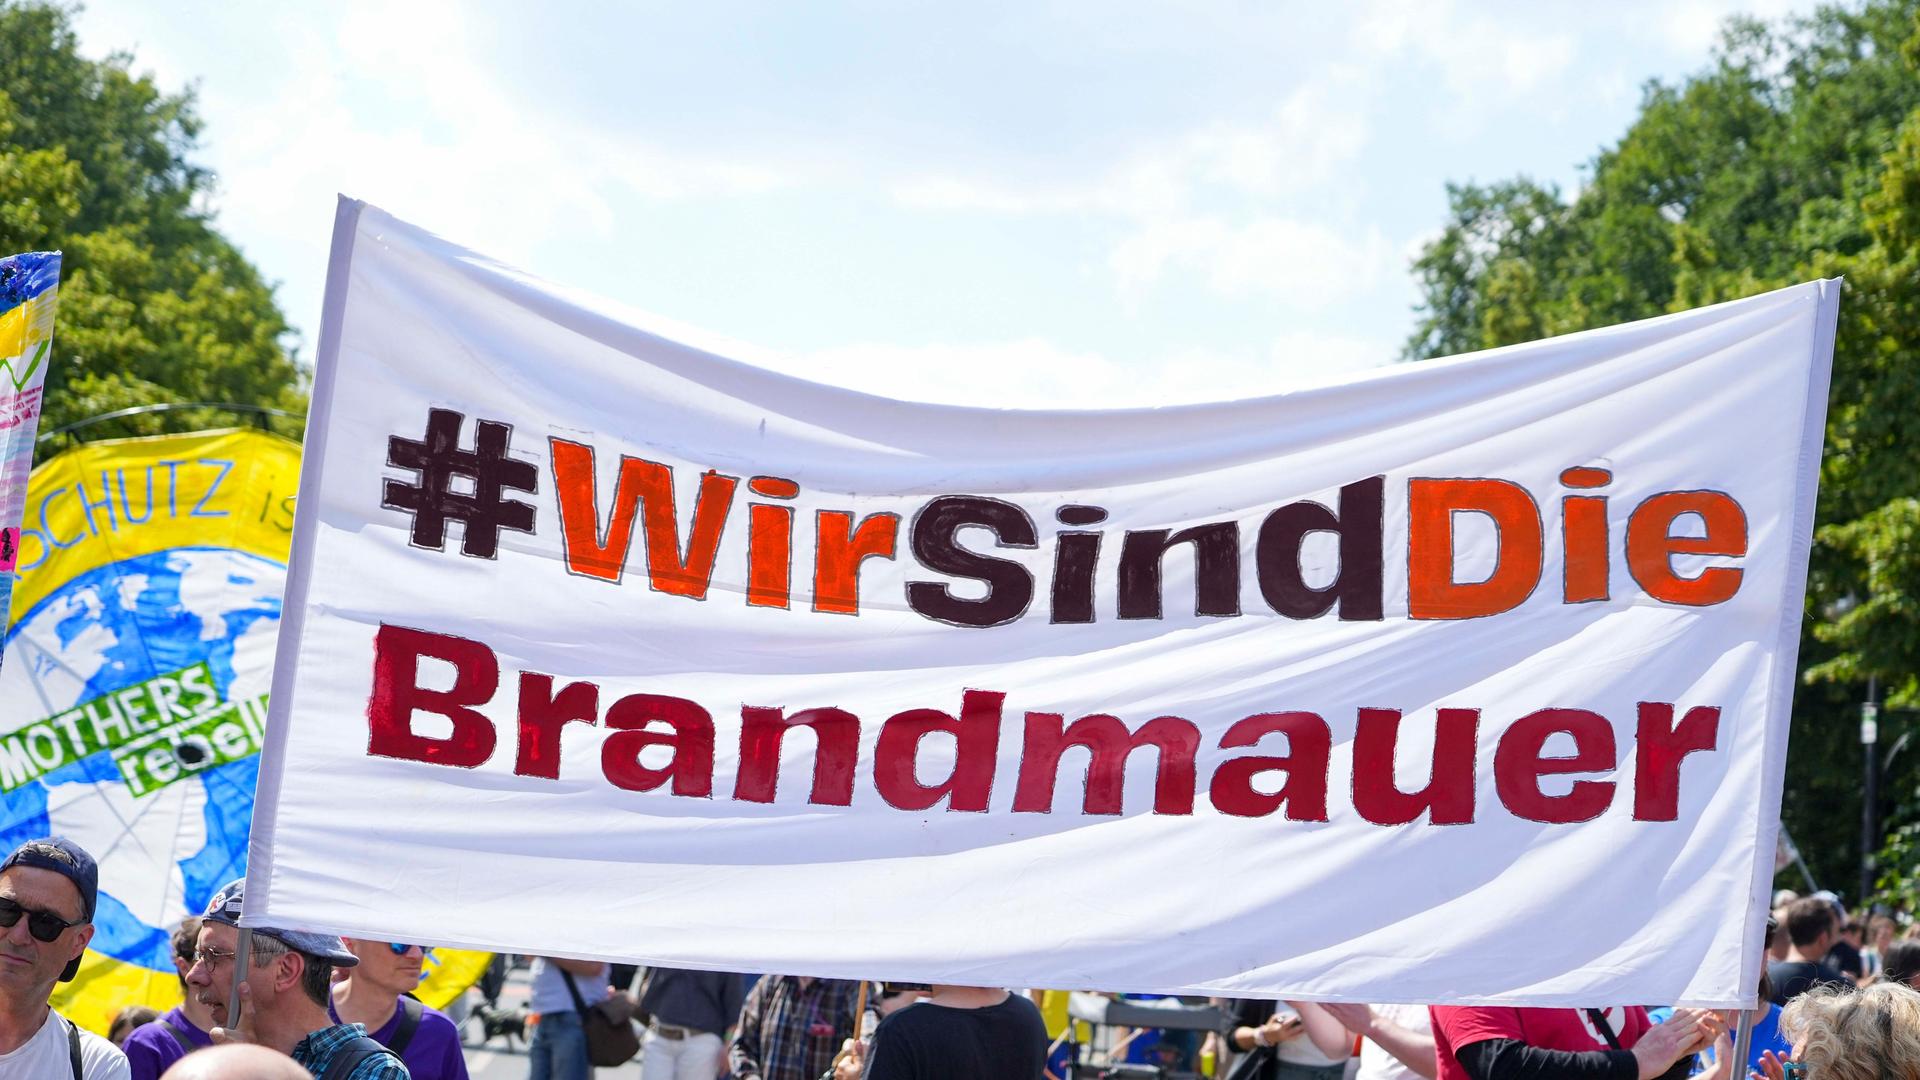 Demonstrierende in Berlin halten ein großes Transparent mit der Aufschrift "Wir sind die Brandmauer".